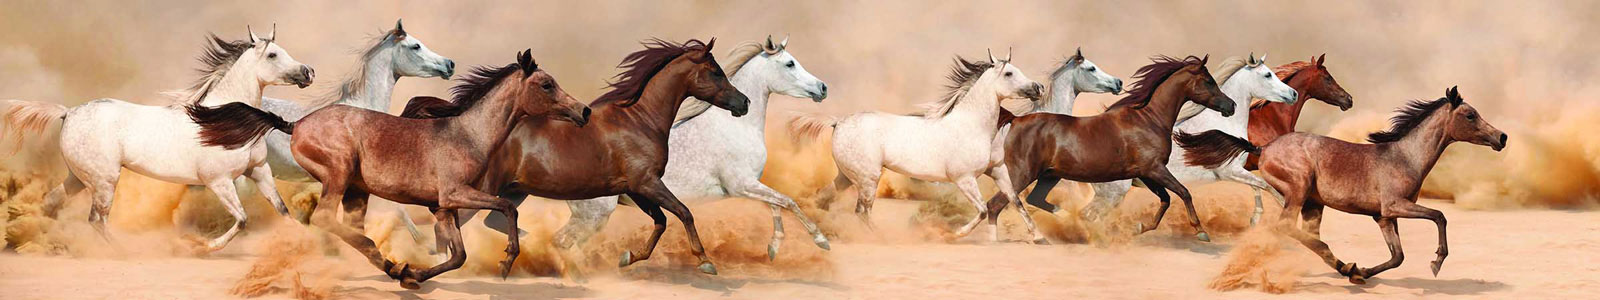 №3295 - Галоп арабских лошадей в песчаной буре